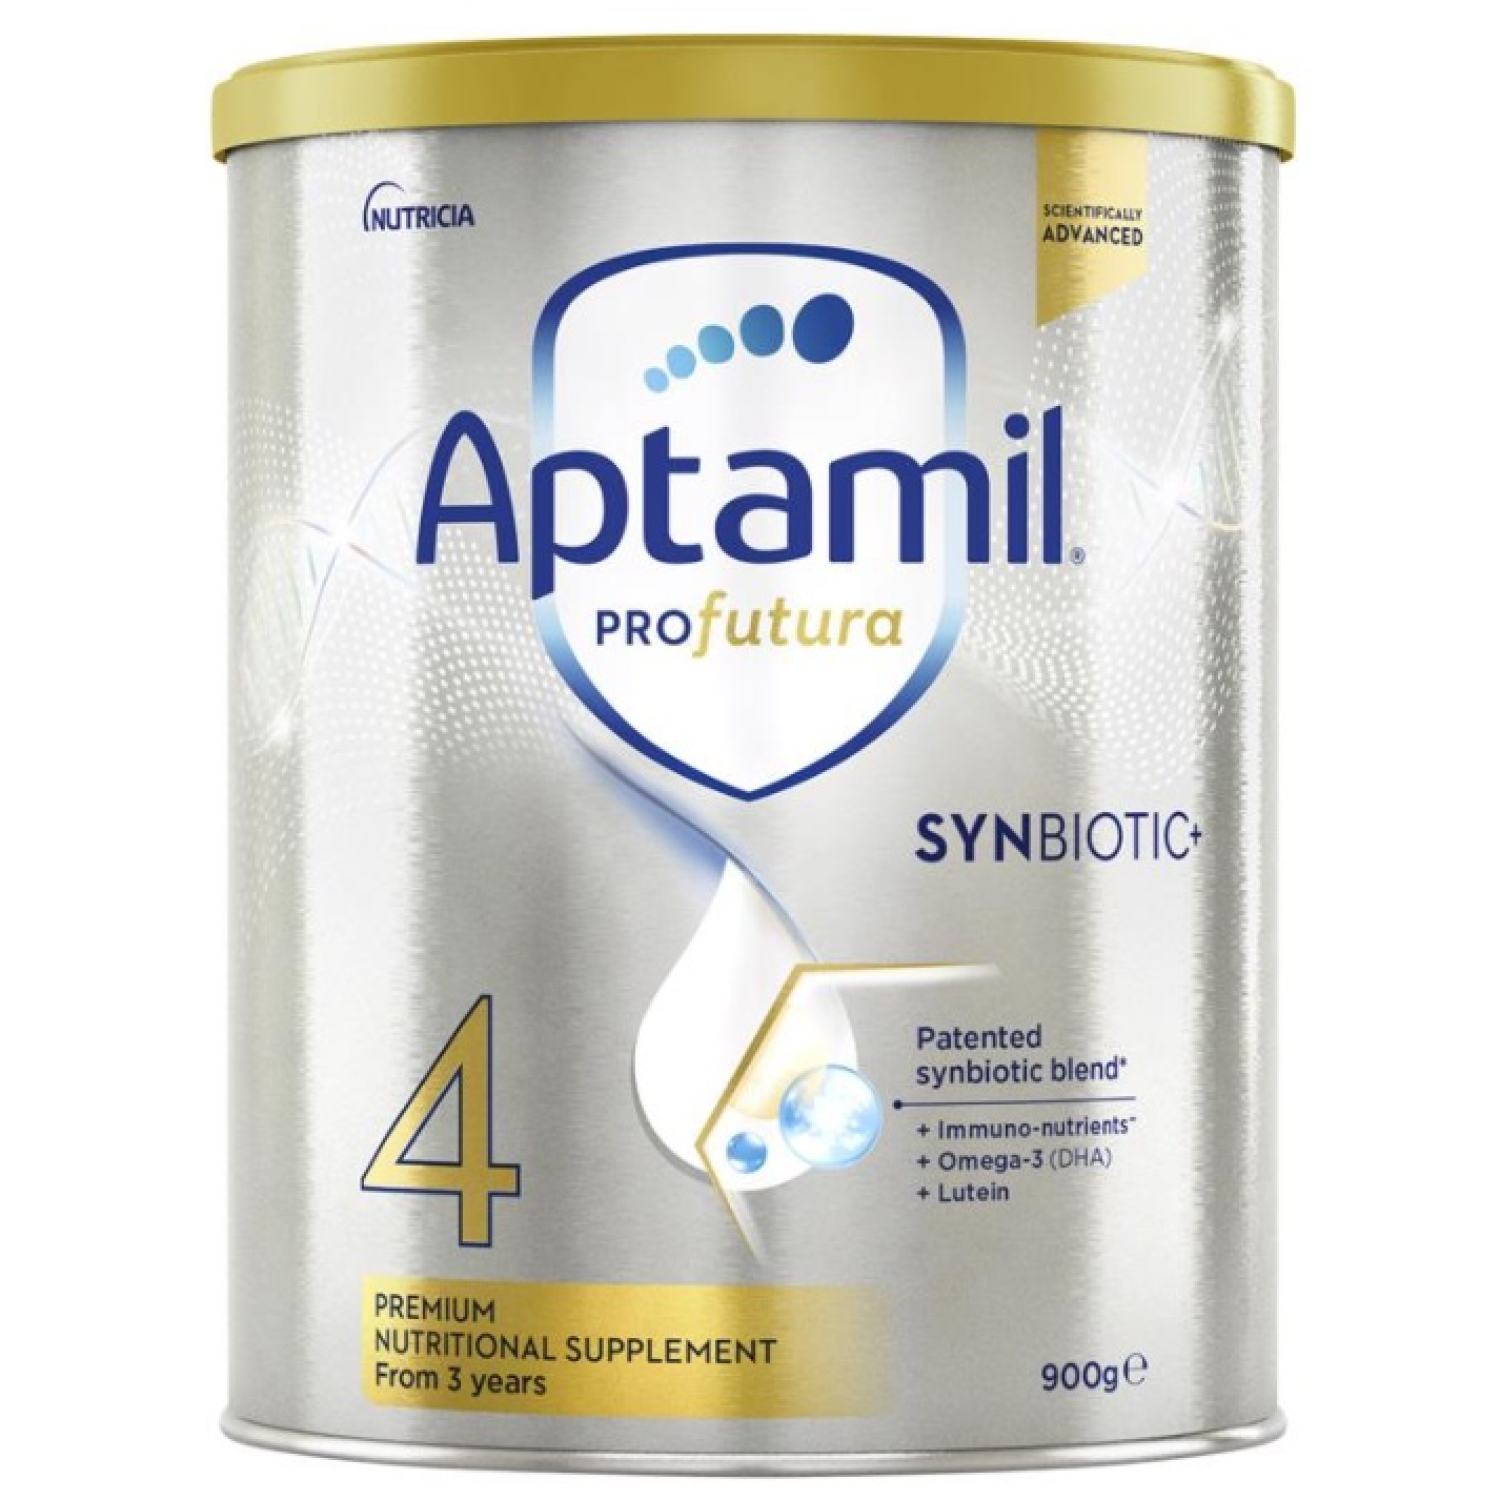 Nhập khẩu chính hãng Úc Sữa bột Aptamil Profutura số 4 dành cho trẻ trên 3